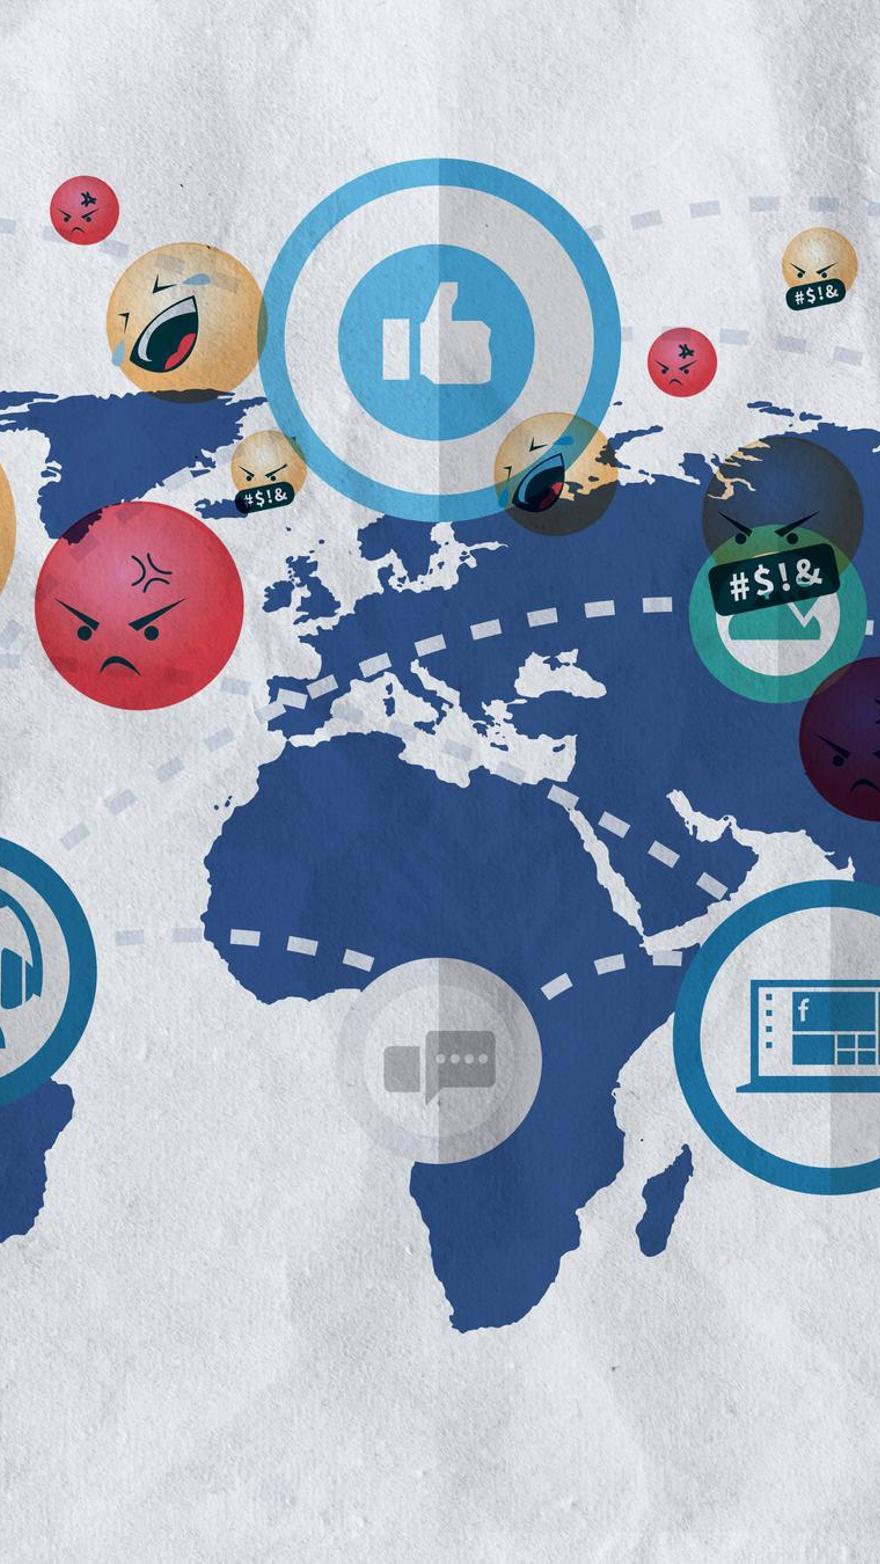 Los estragos de las redes sociales en la geopolítica: la ira digital pone el mundo patas arriba